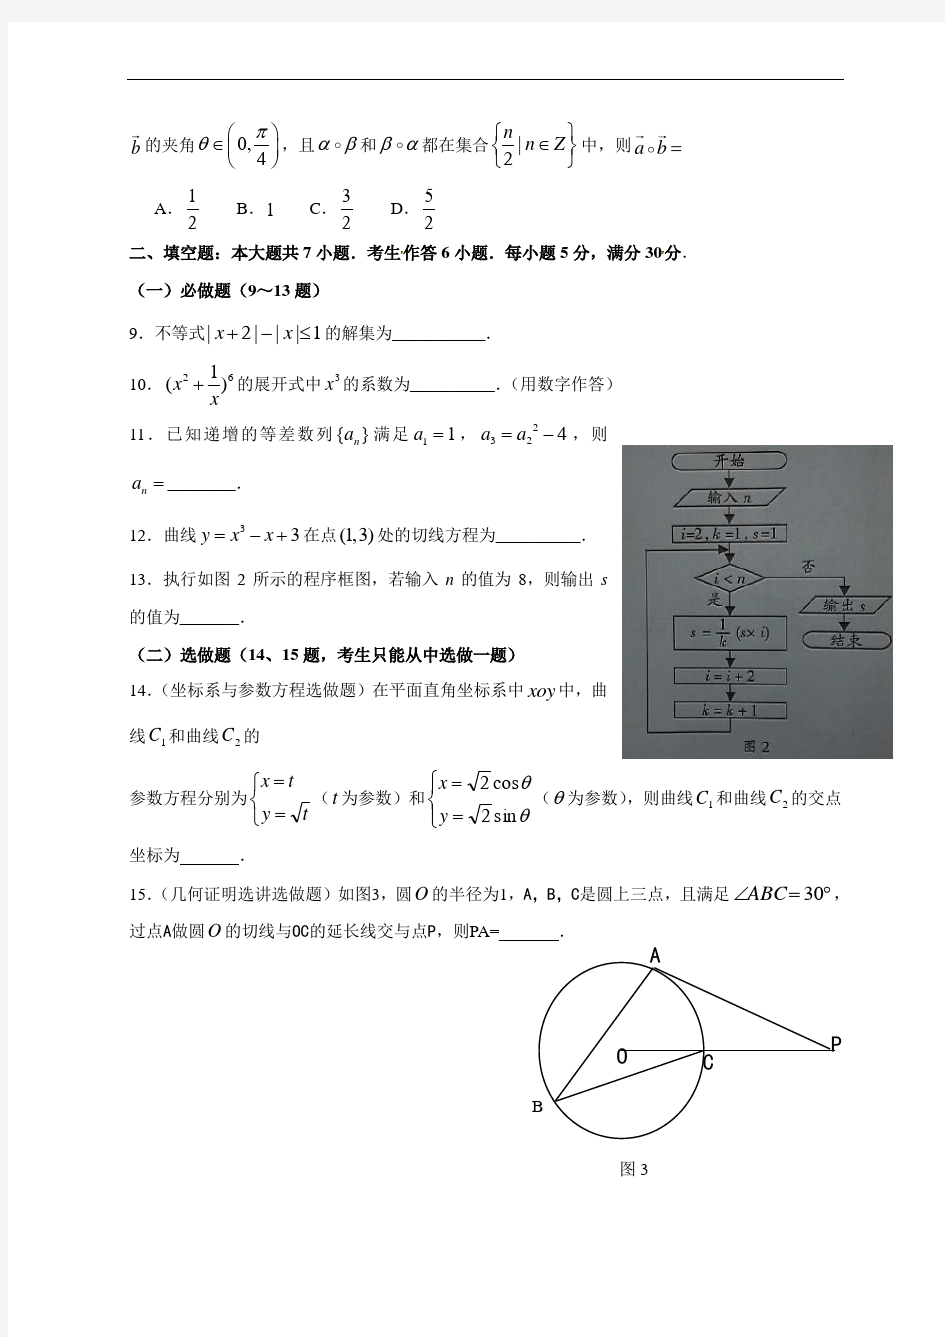 2012年全国高考理科数学试题及答案-广东卷